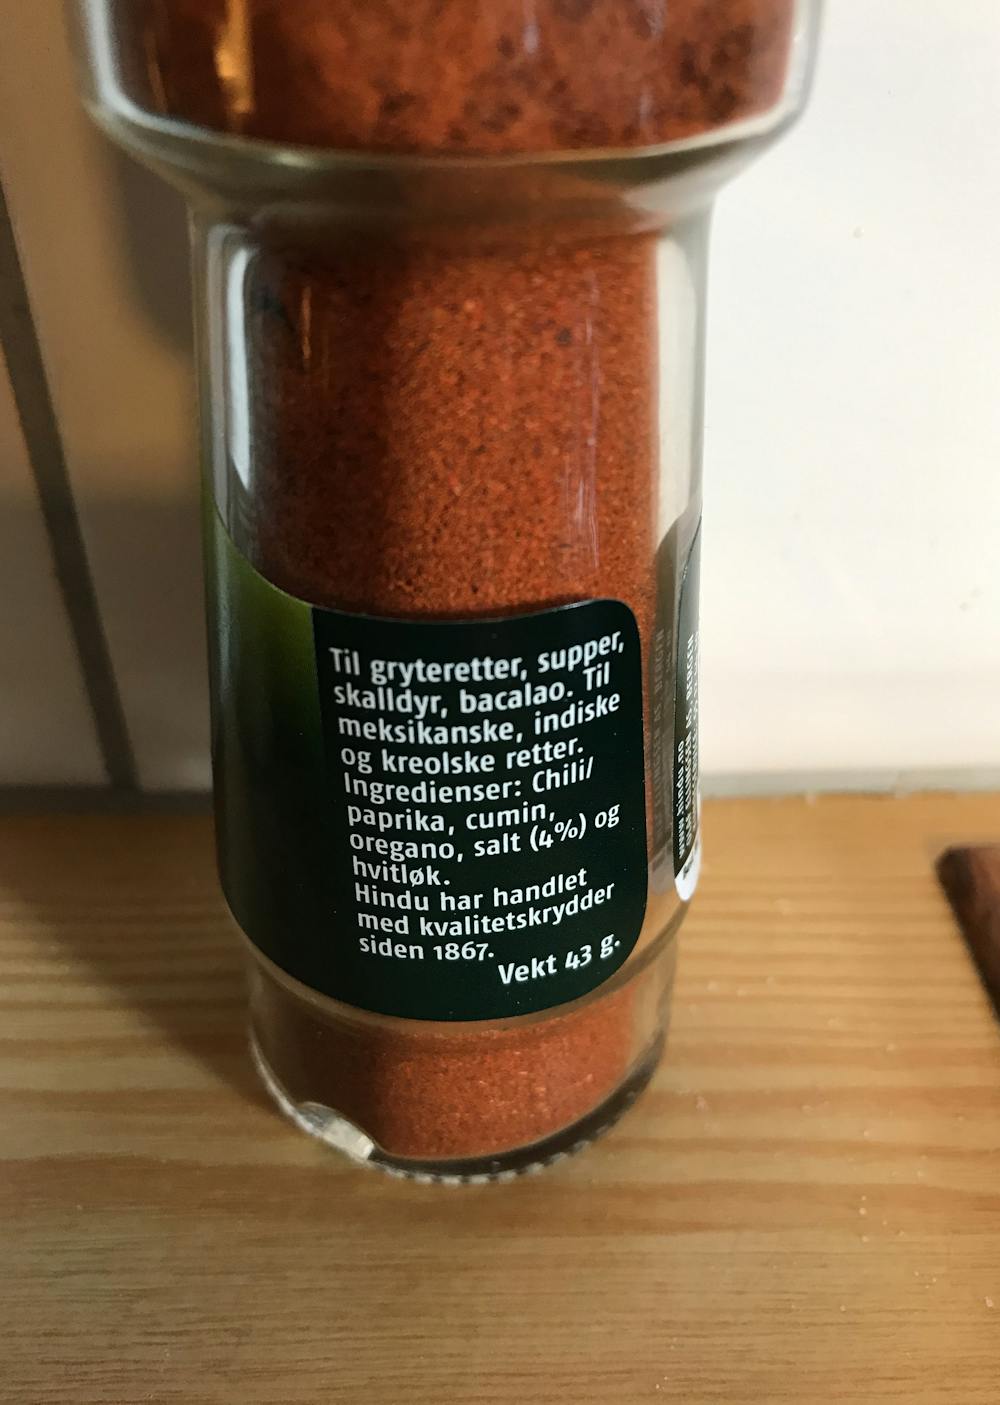 Ingrediensliste - Chilipulver, Hindu